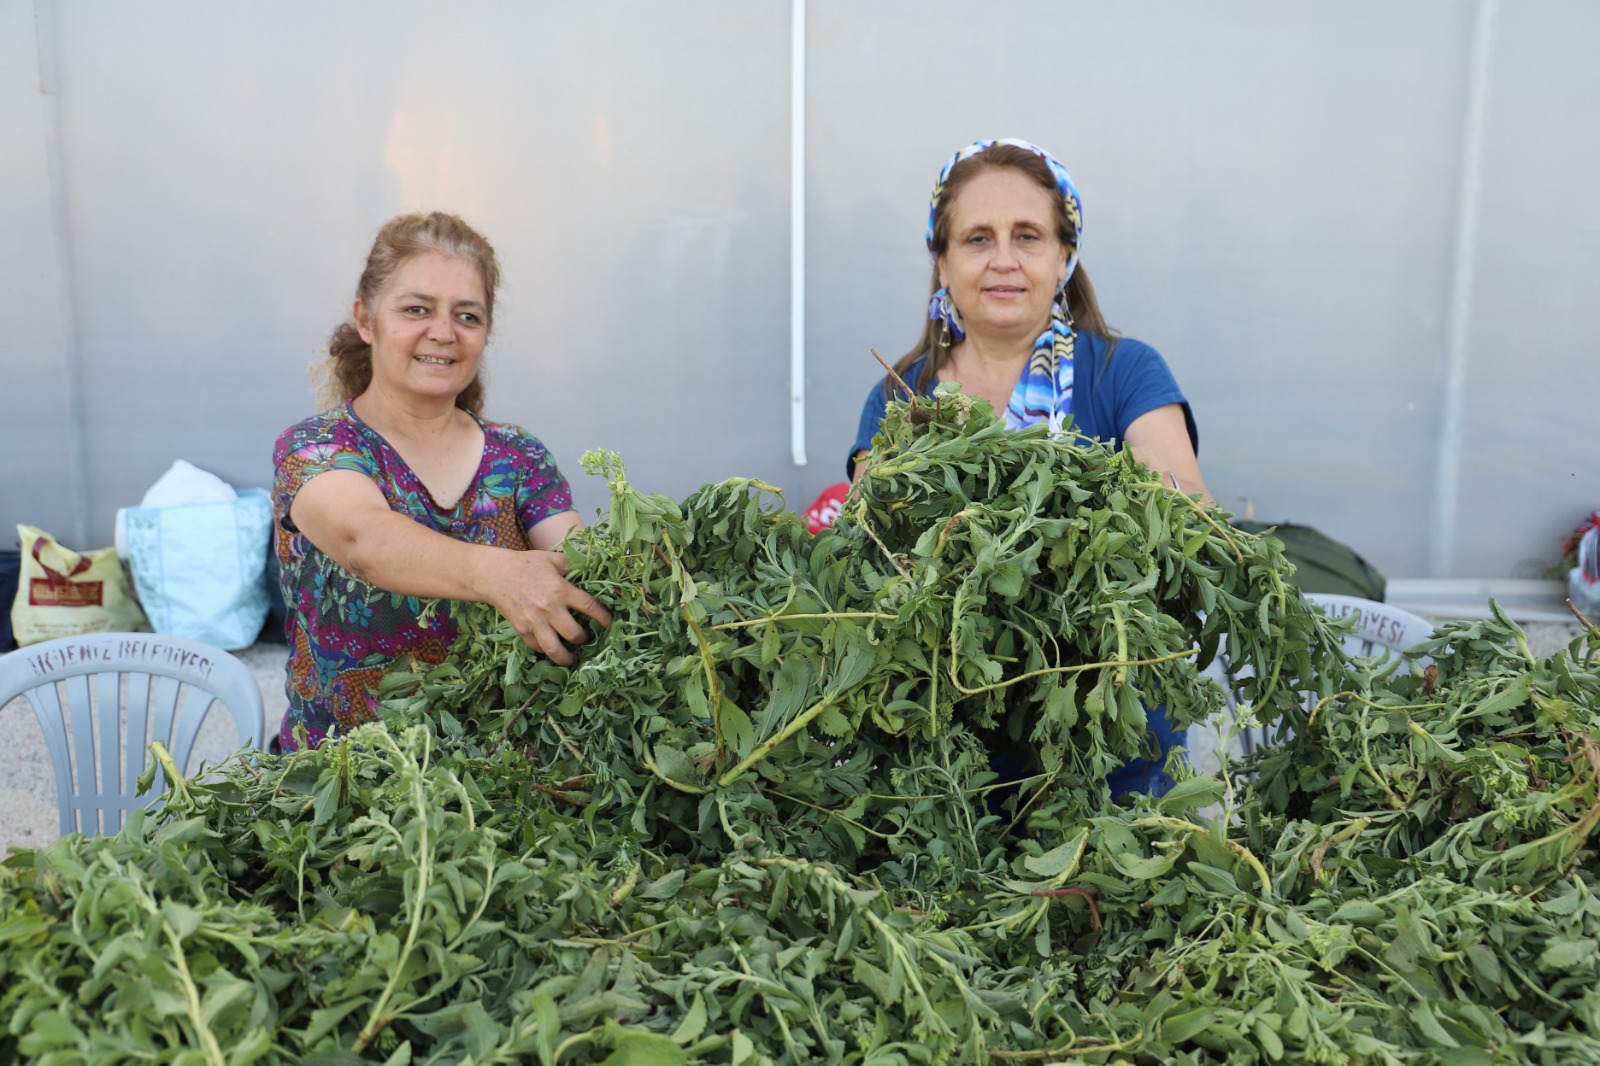 Üç ay önce ekimi yapılan Stevia Bitkisi ve Moringa Çayı Bitkisinin ilk hasadından büyük verim elde edildi “AKDENİZ BELEDİYESİ, DAĞI BAĞA ÇEVİRDİ”